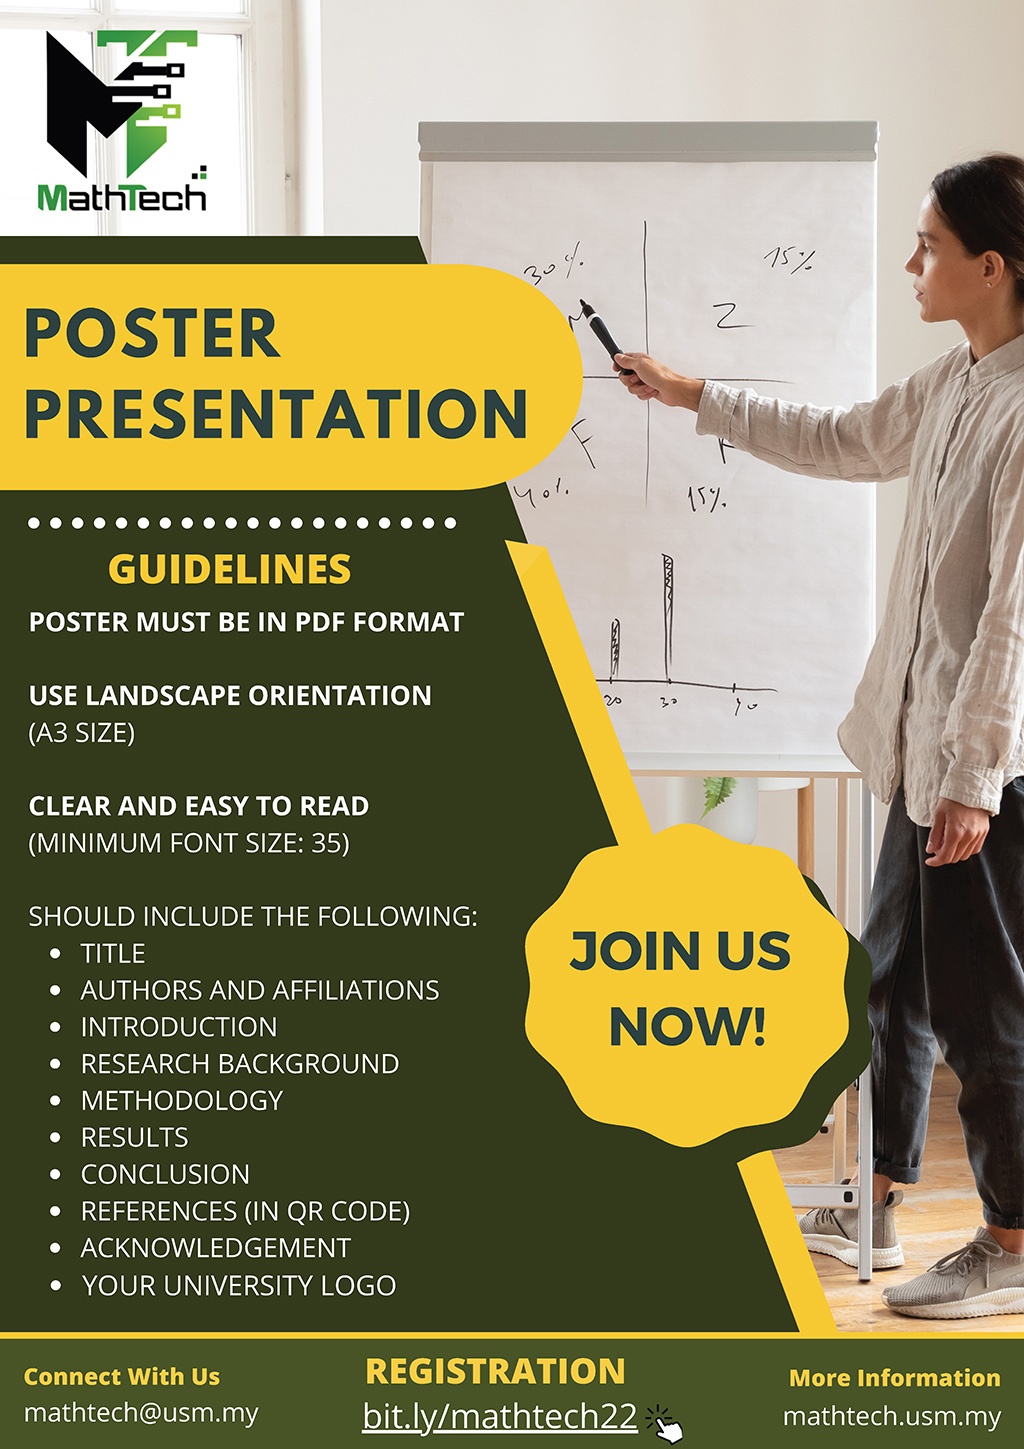 MathTech 2022 Poster Presentation